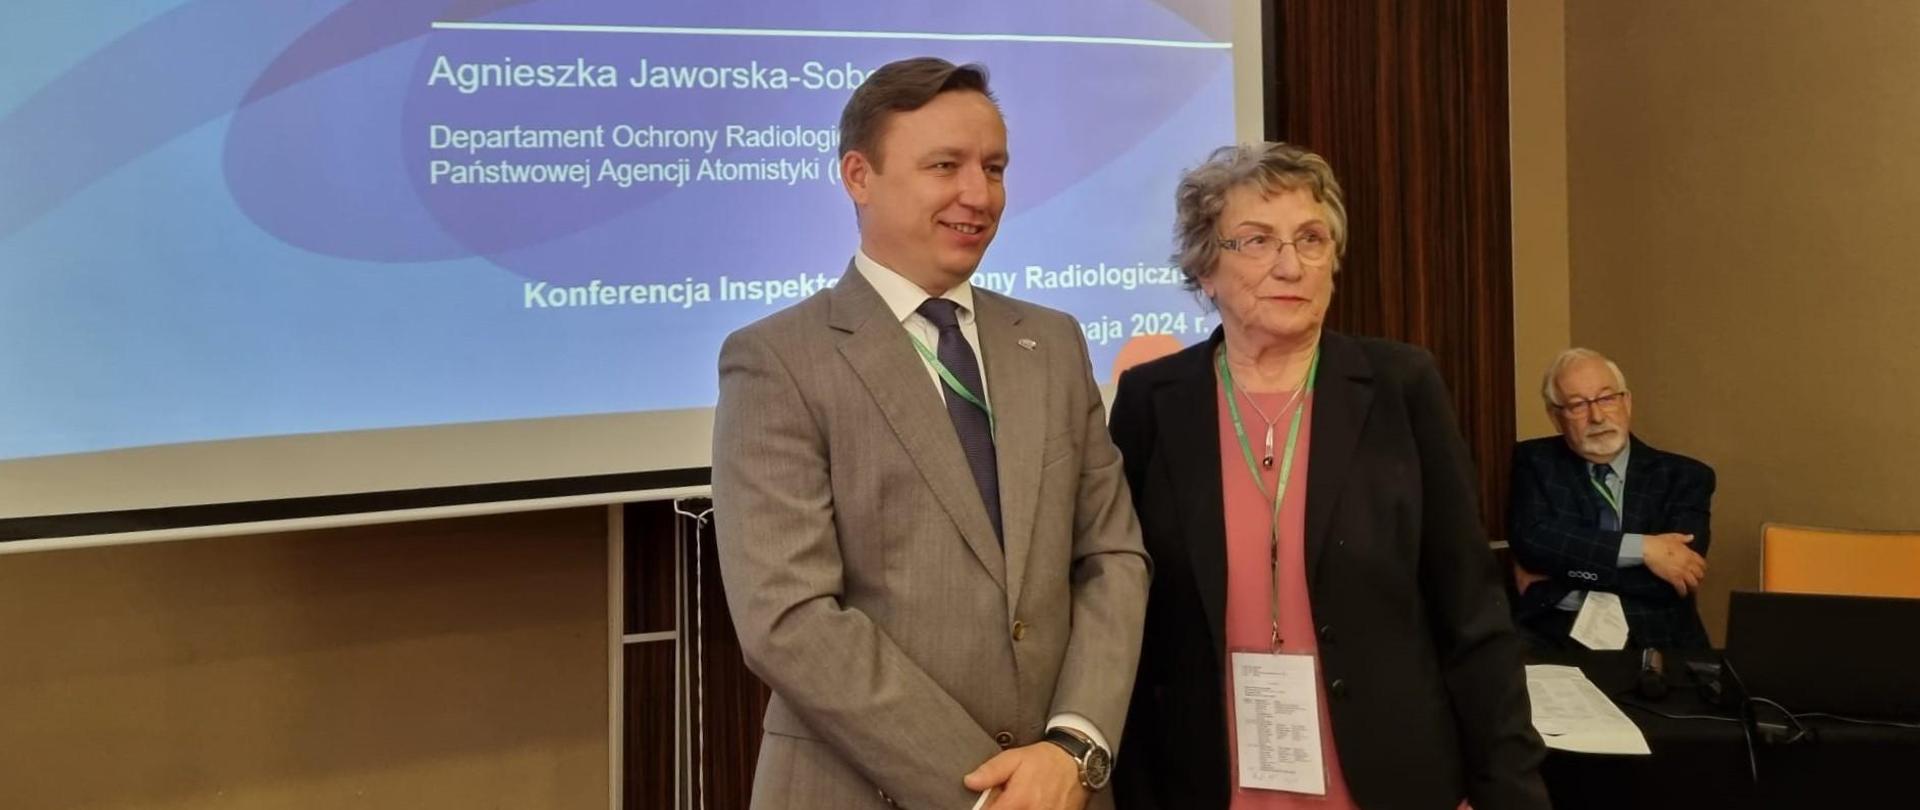 Andrzej Głowacki Prezes Państwowej Agencji Atomistyki, Maria Kubicka Prezes Stowarzyszenia Inspektorów Ochrony Radiologicznej podczas Konferencji SIOR